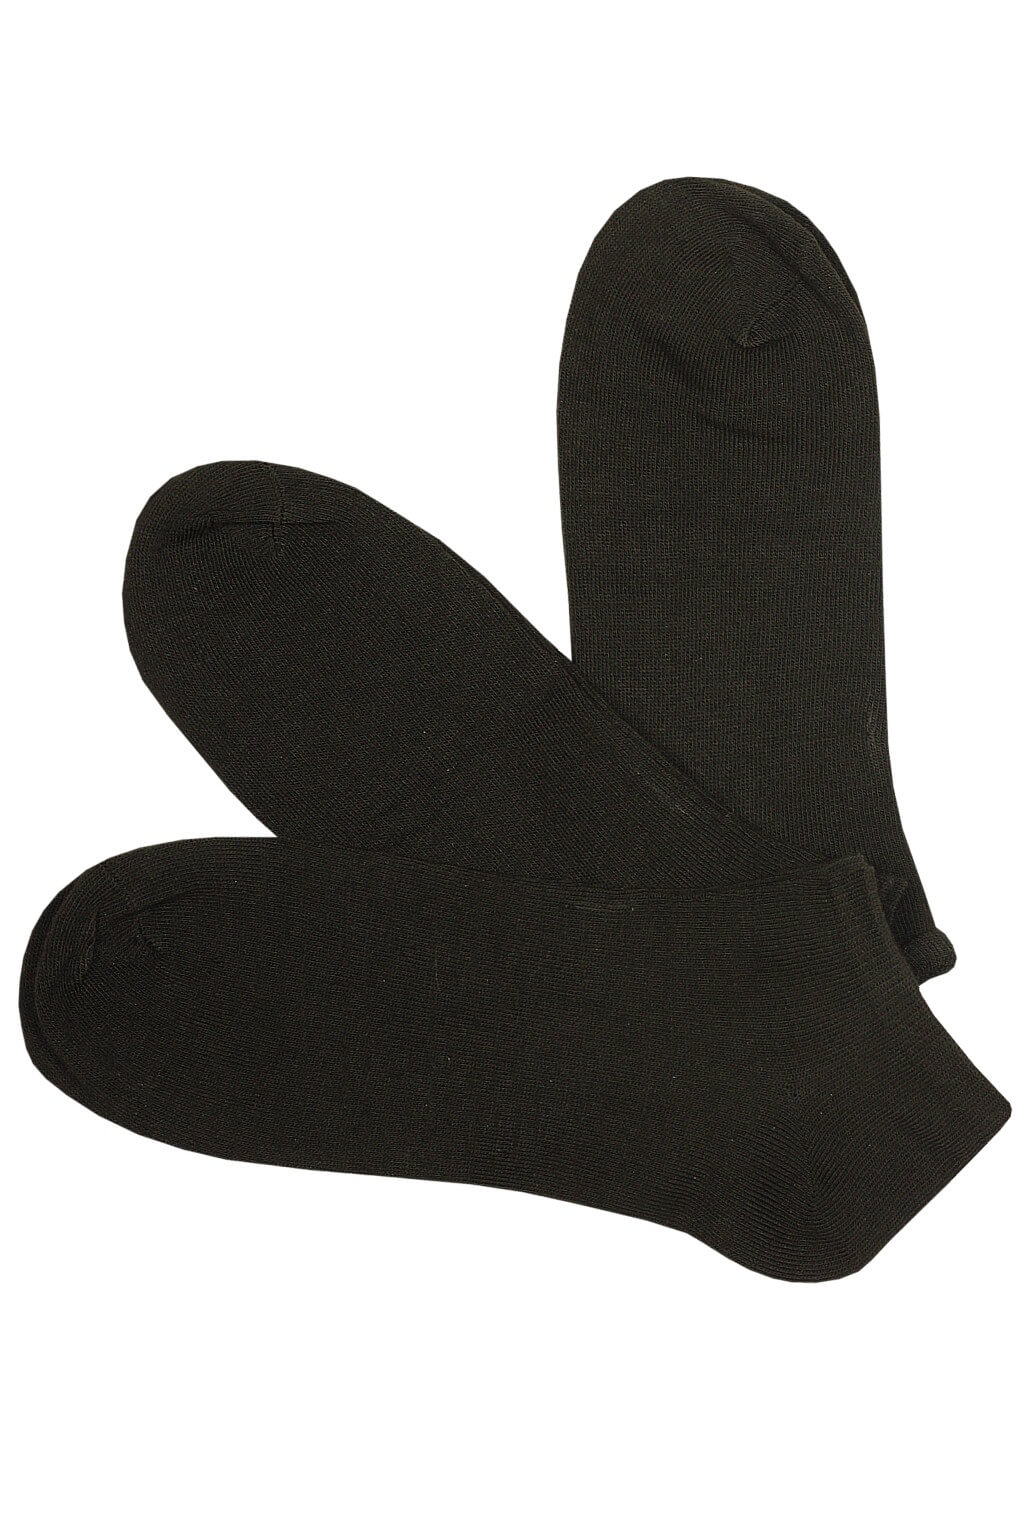 Pánské levné ponožky kotníčkové 3Pack EM1001C 43-47 černá